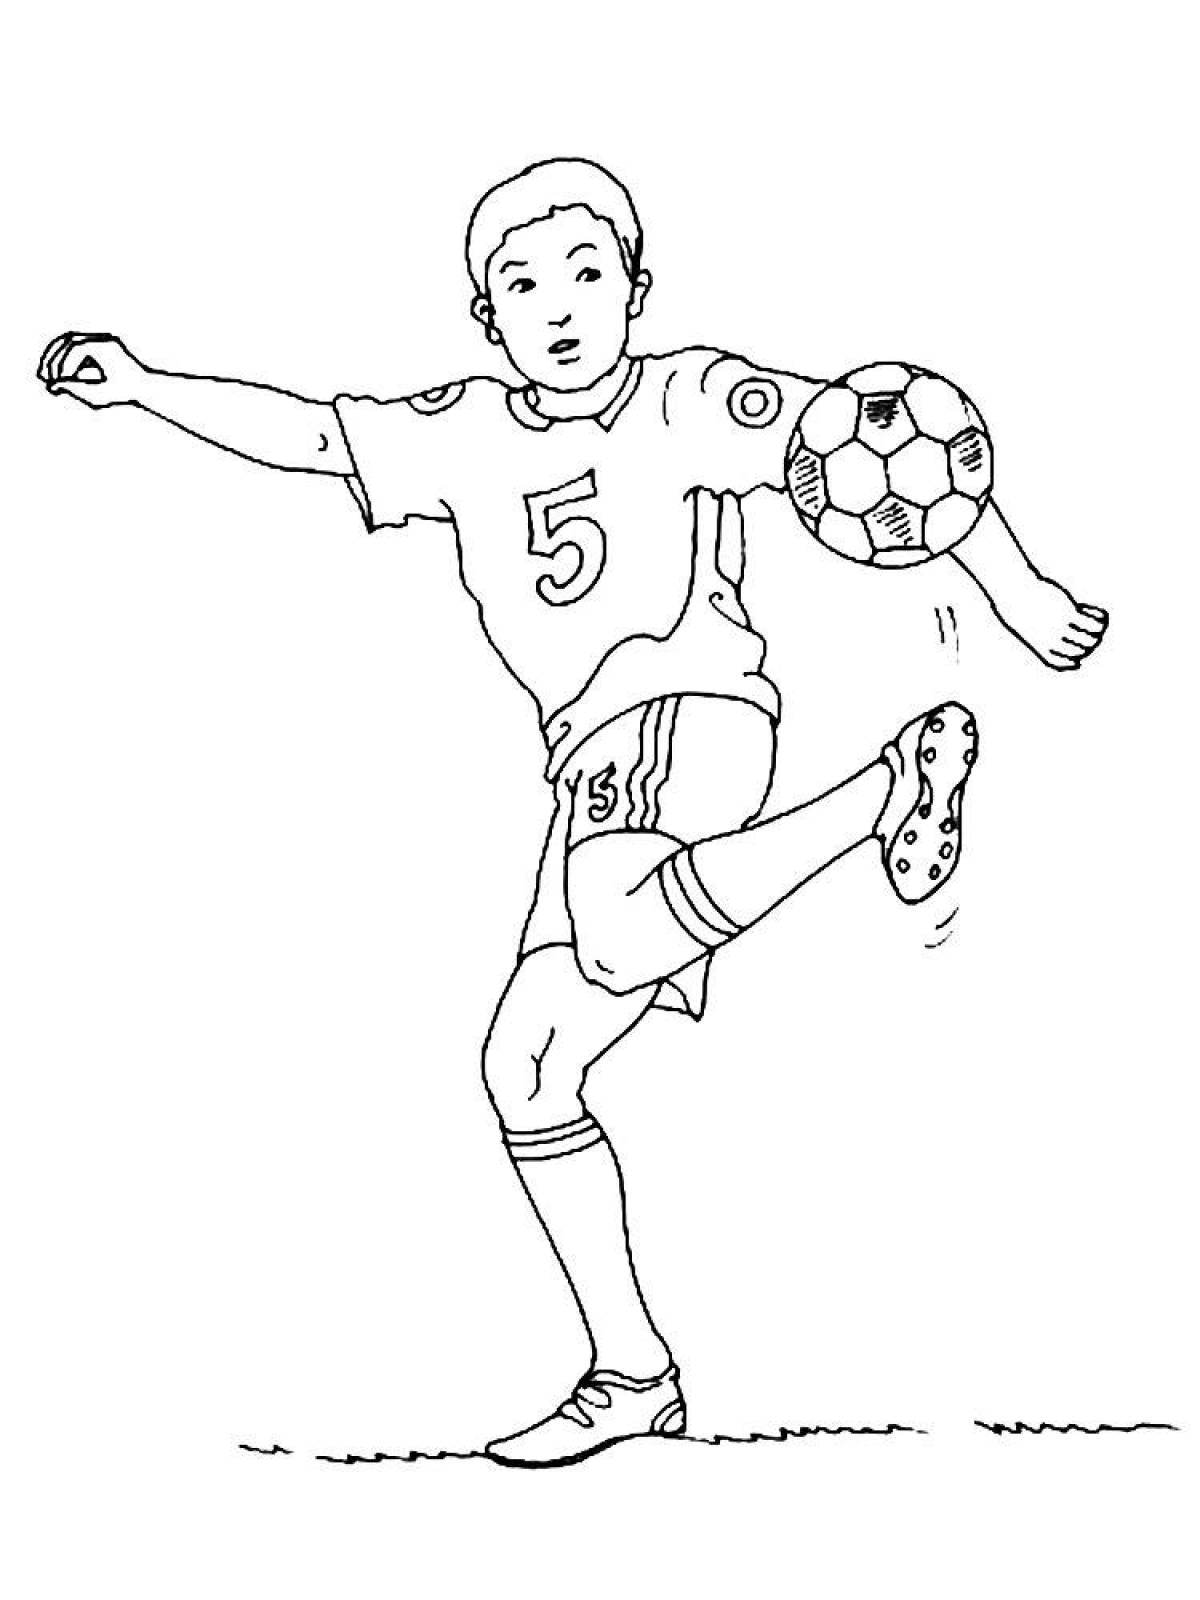 Раскраска футболиста с мячом